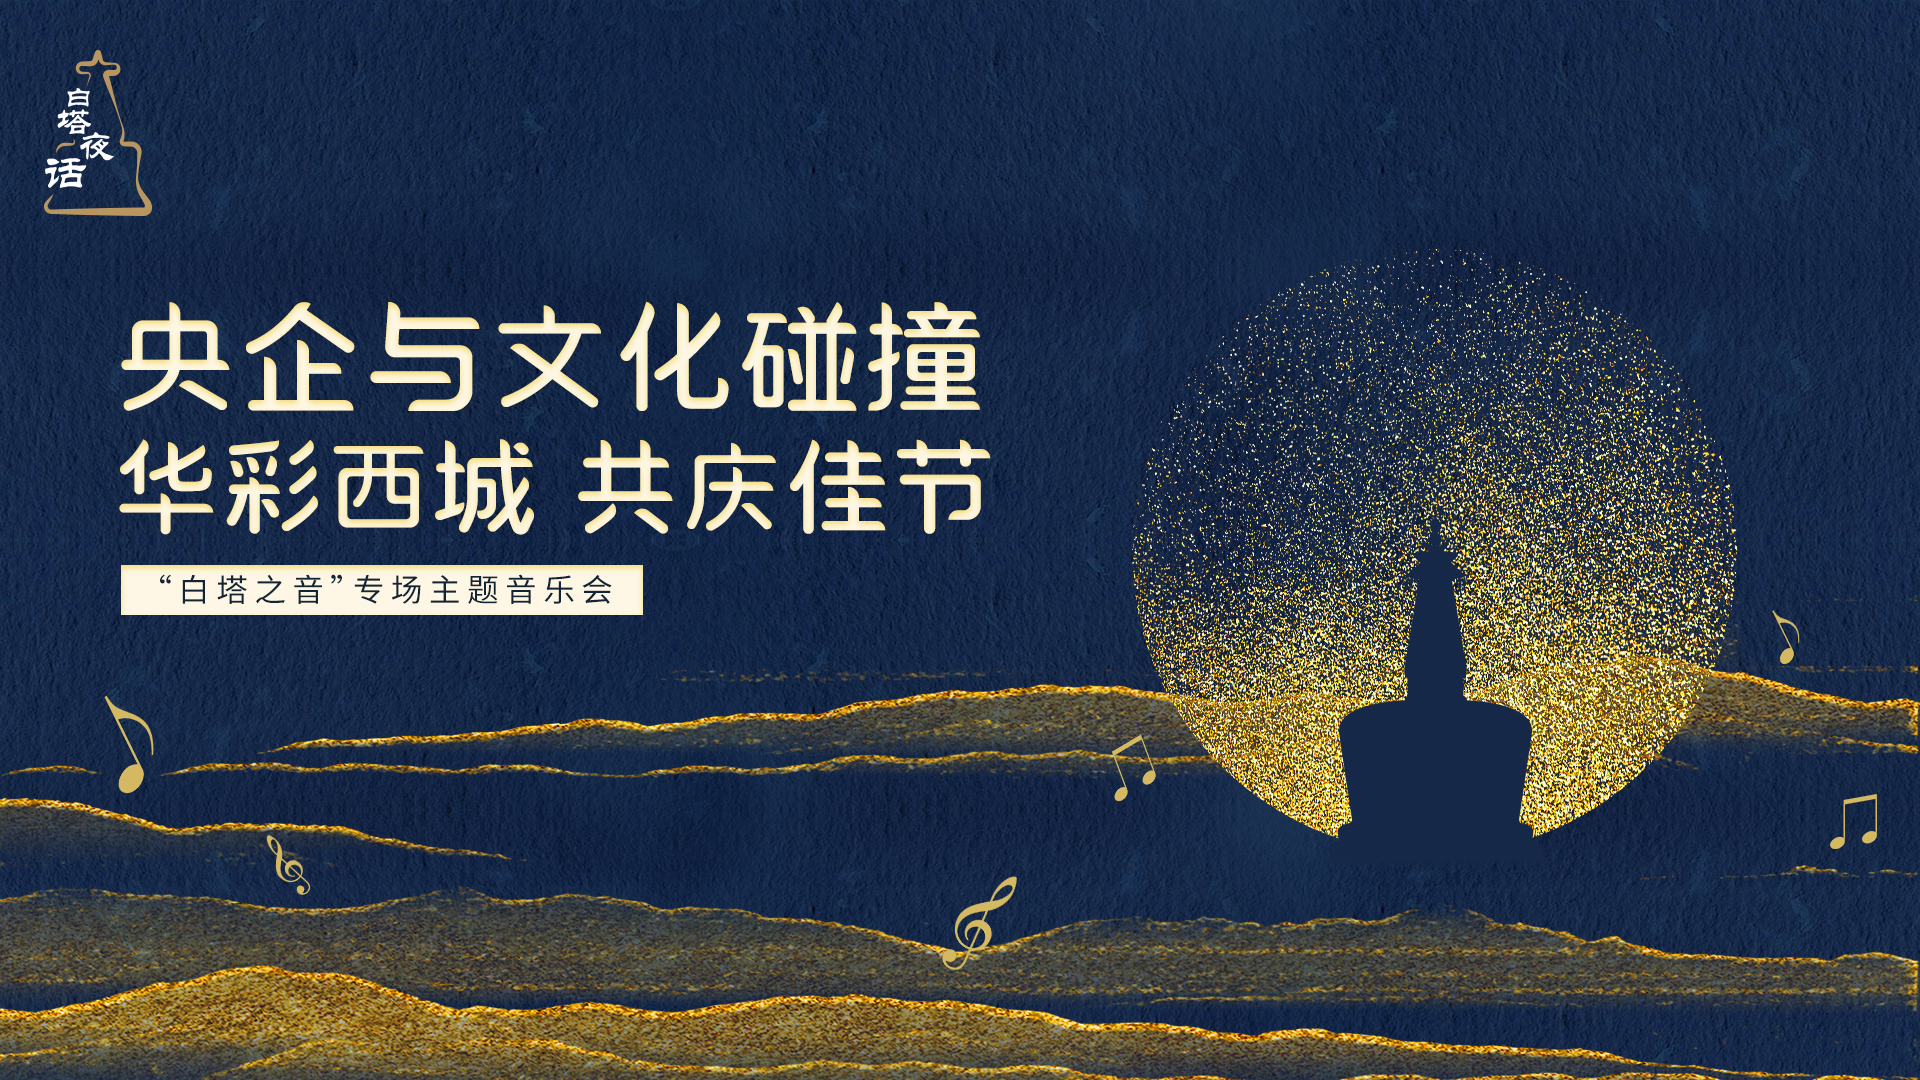 华彩西城·共庆佳节——“白塔夜话”重点央企专场音乐会